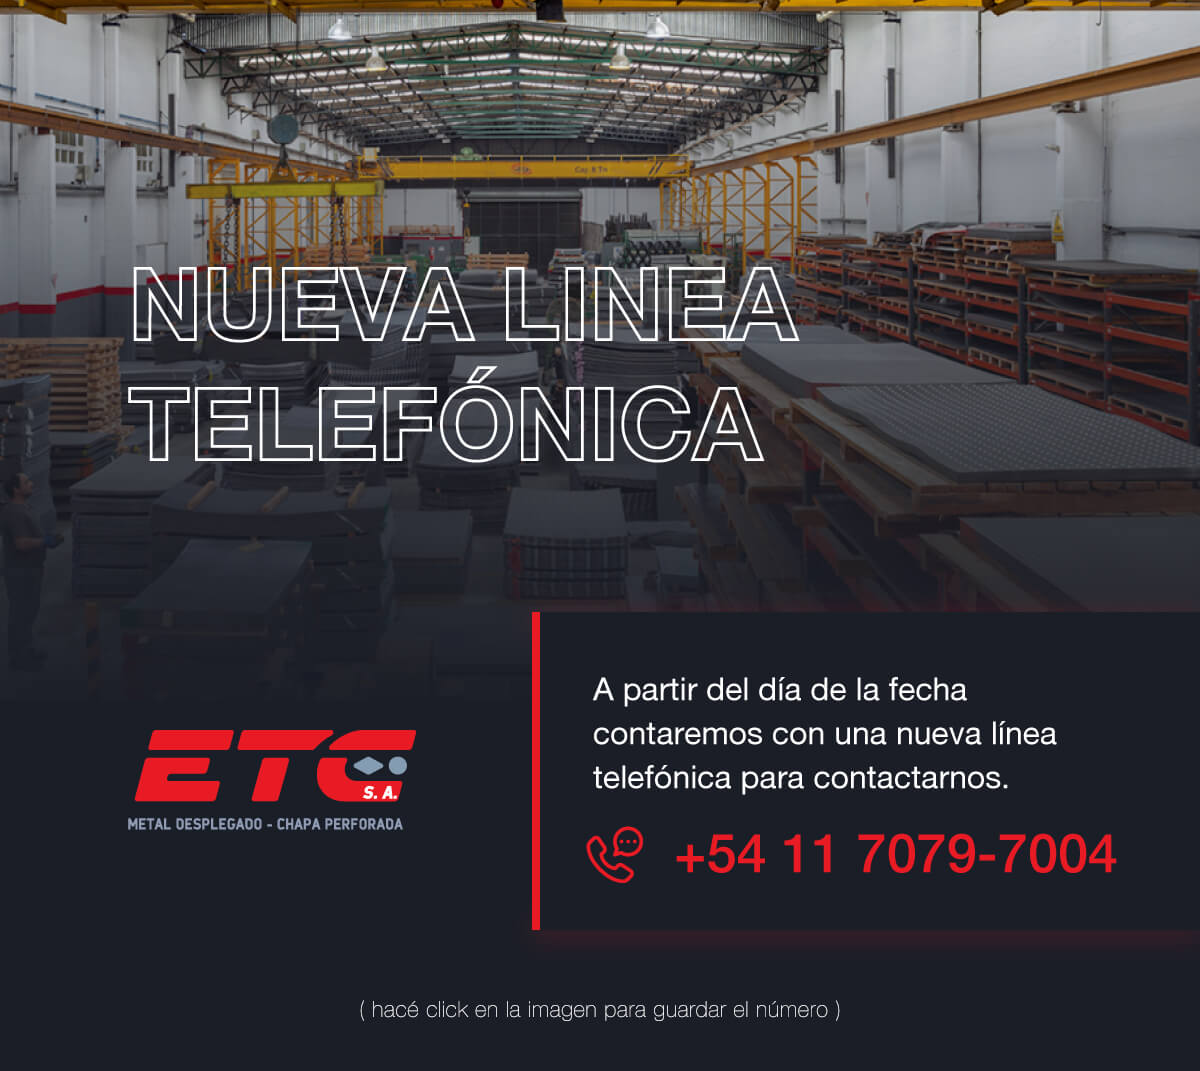 ETC Nueva linea telefonica